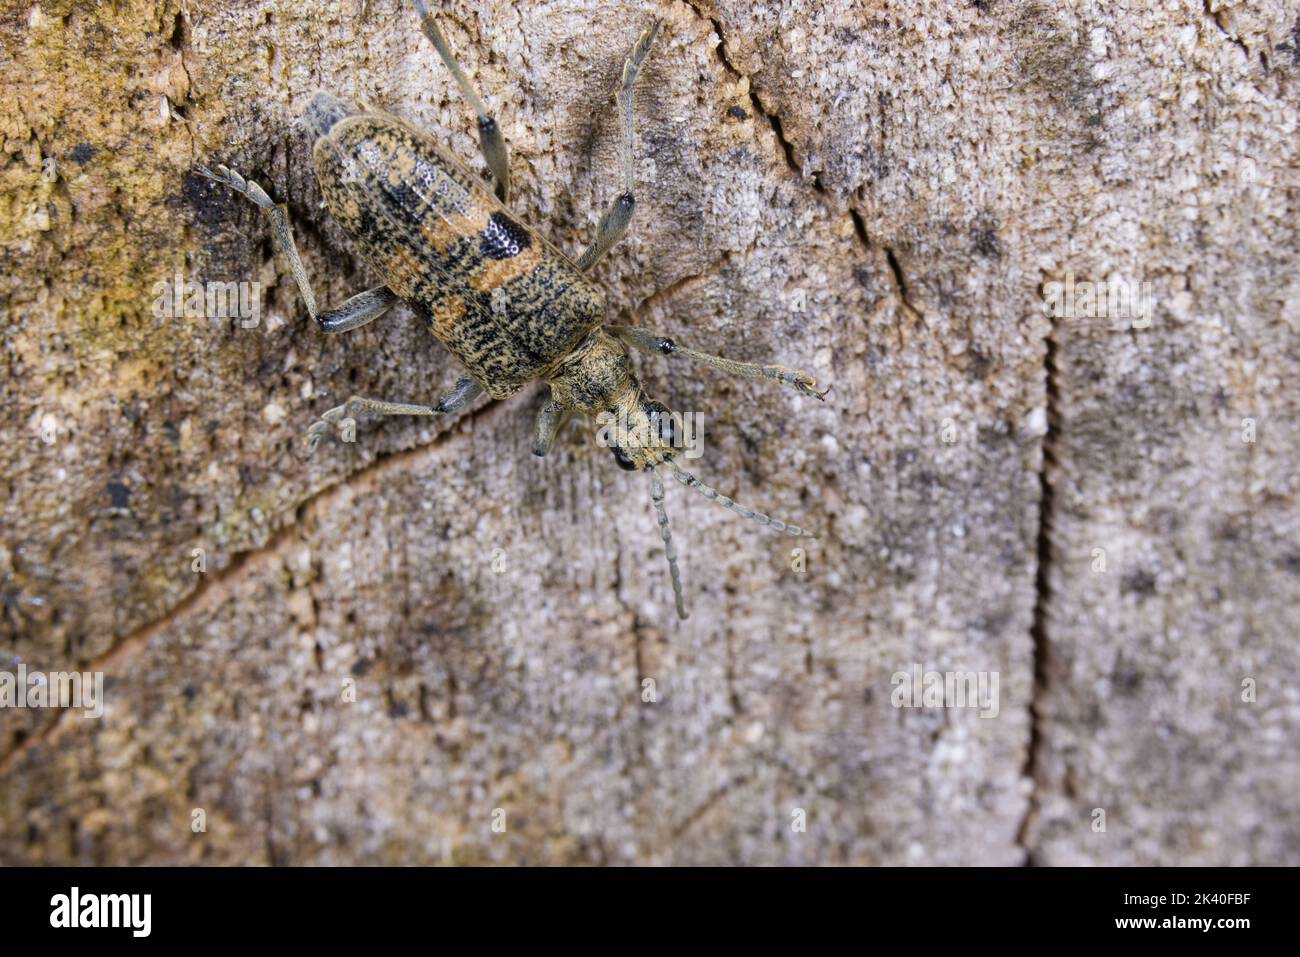 Los alicates Blackspotted soportan el escarabajo, el escarabajo del longhorn de roble (Rhagium mordax), bien camuflado en madera muerta, Alemania Foto de stock